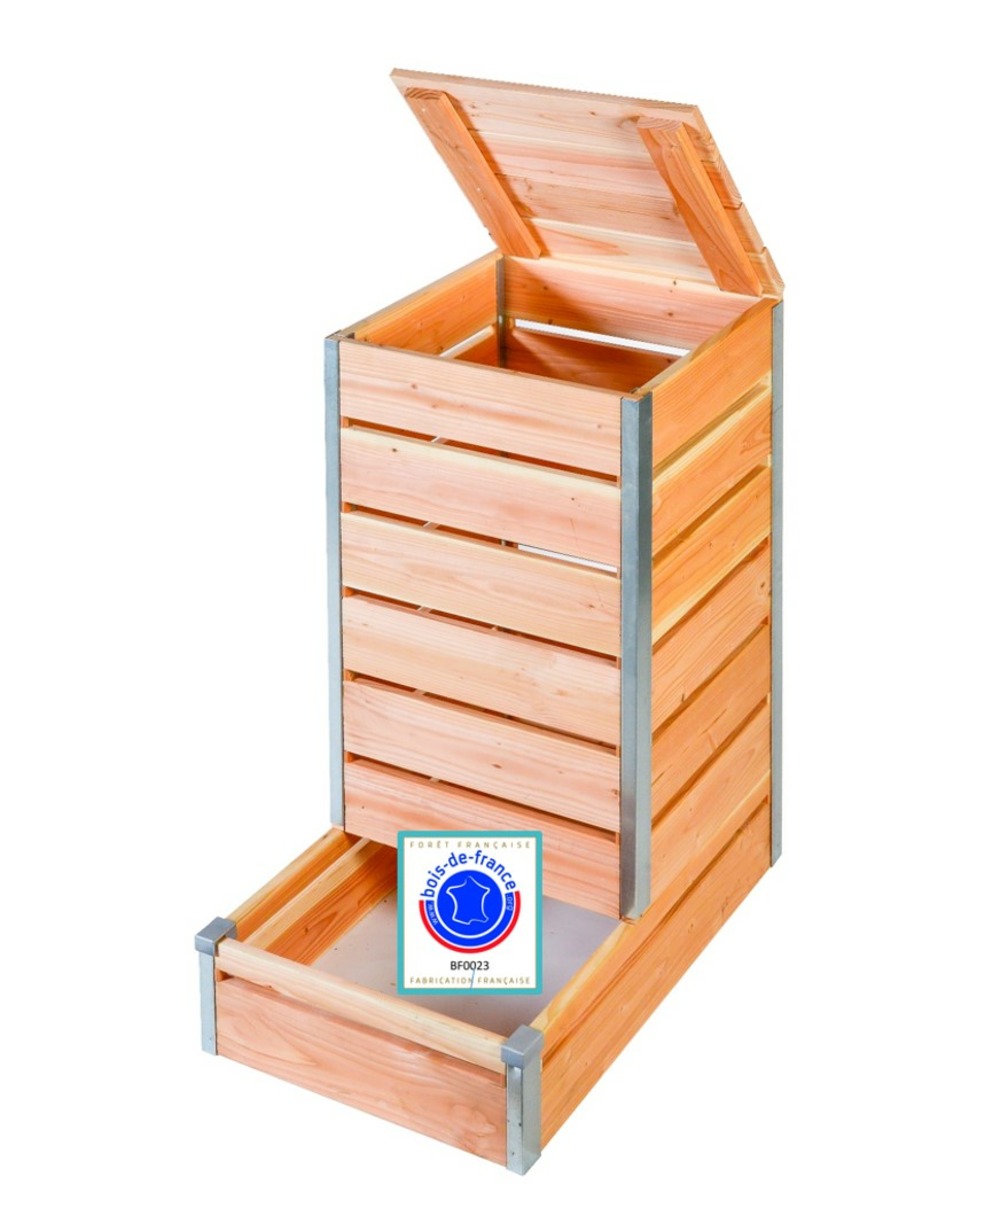 Composteur en bois avec accès direct, vente au meilleur prix